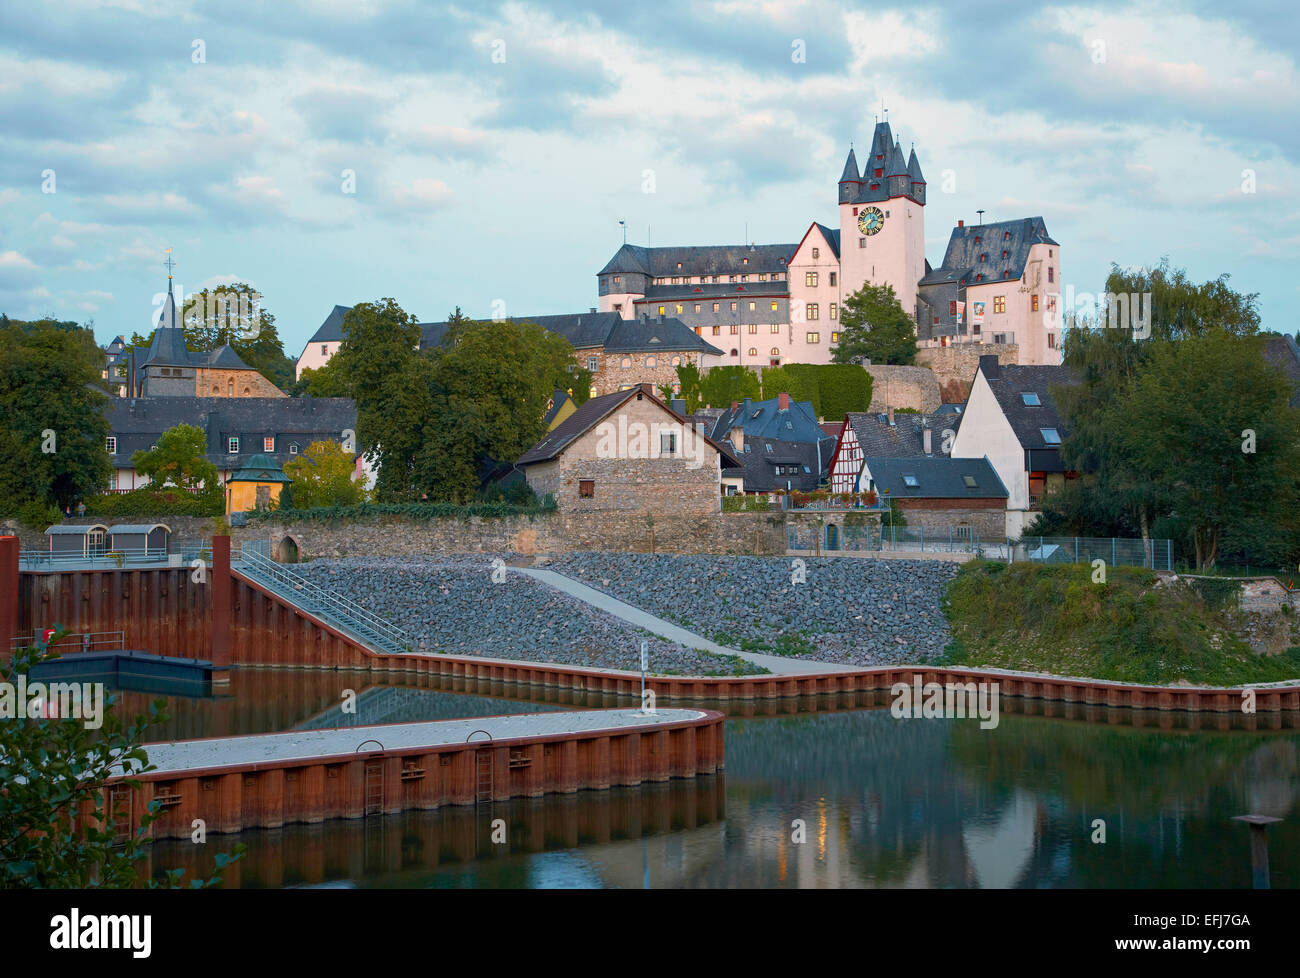 Diez castle in the evening, Diez an der Lahn, Westerwald, Rhineland-Palatinate, Germany, Europe Stock Photo